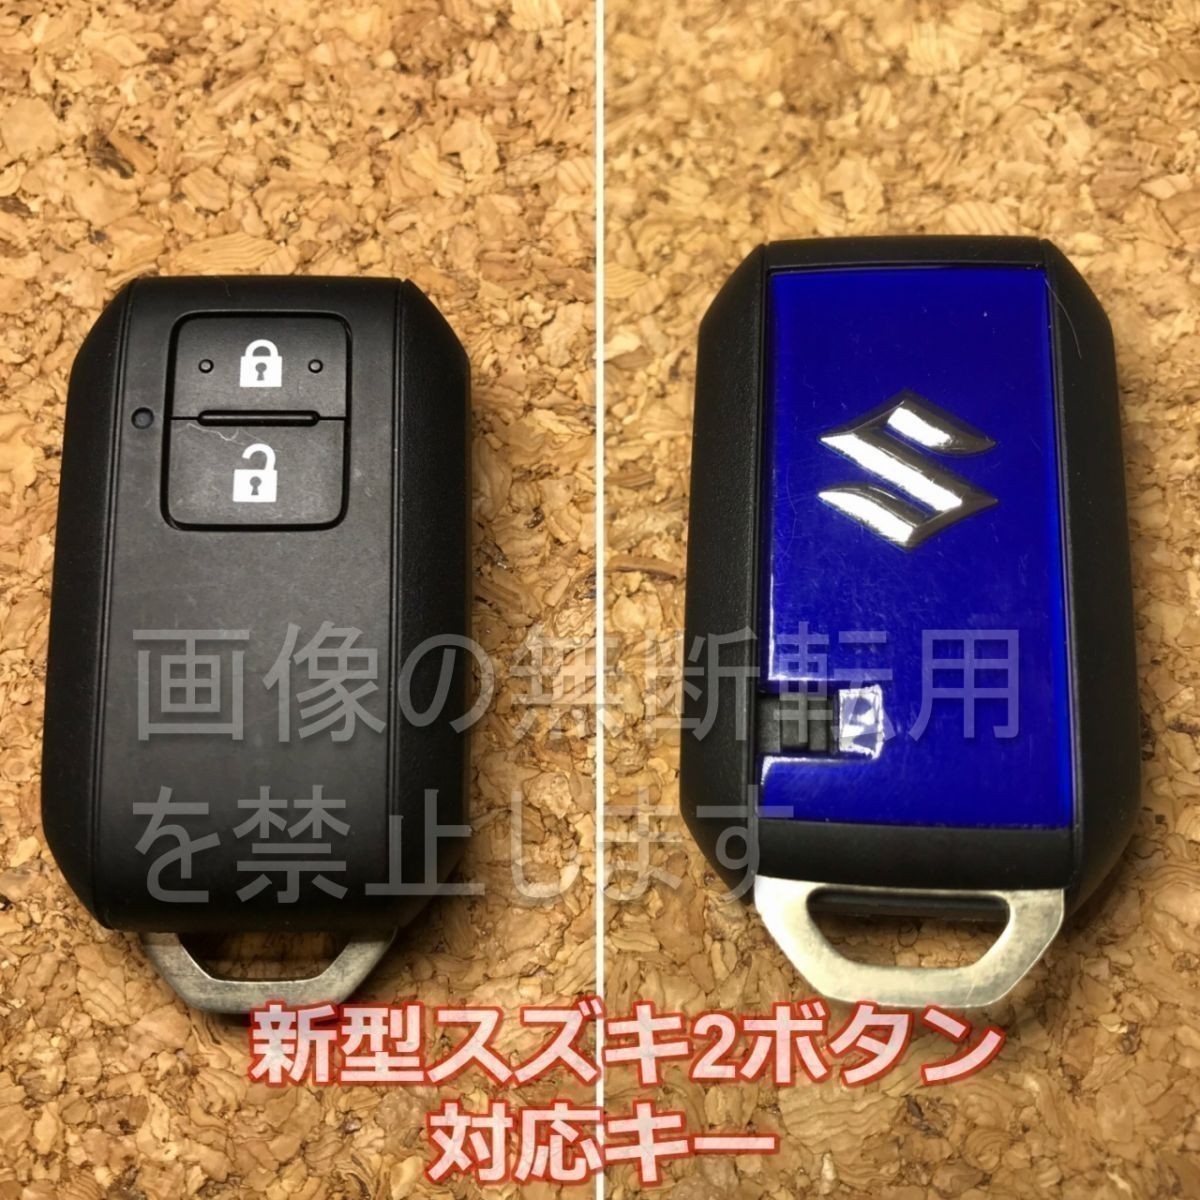  Suzuki ( Mazda ) Heart 2 кнопка силикон ключ покрытие для умного ключа чехол для ключей S08 новая модель Hustler MR52S/MR92S*.. розовый 